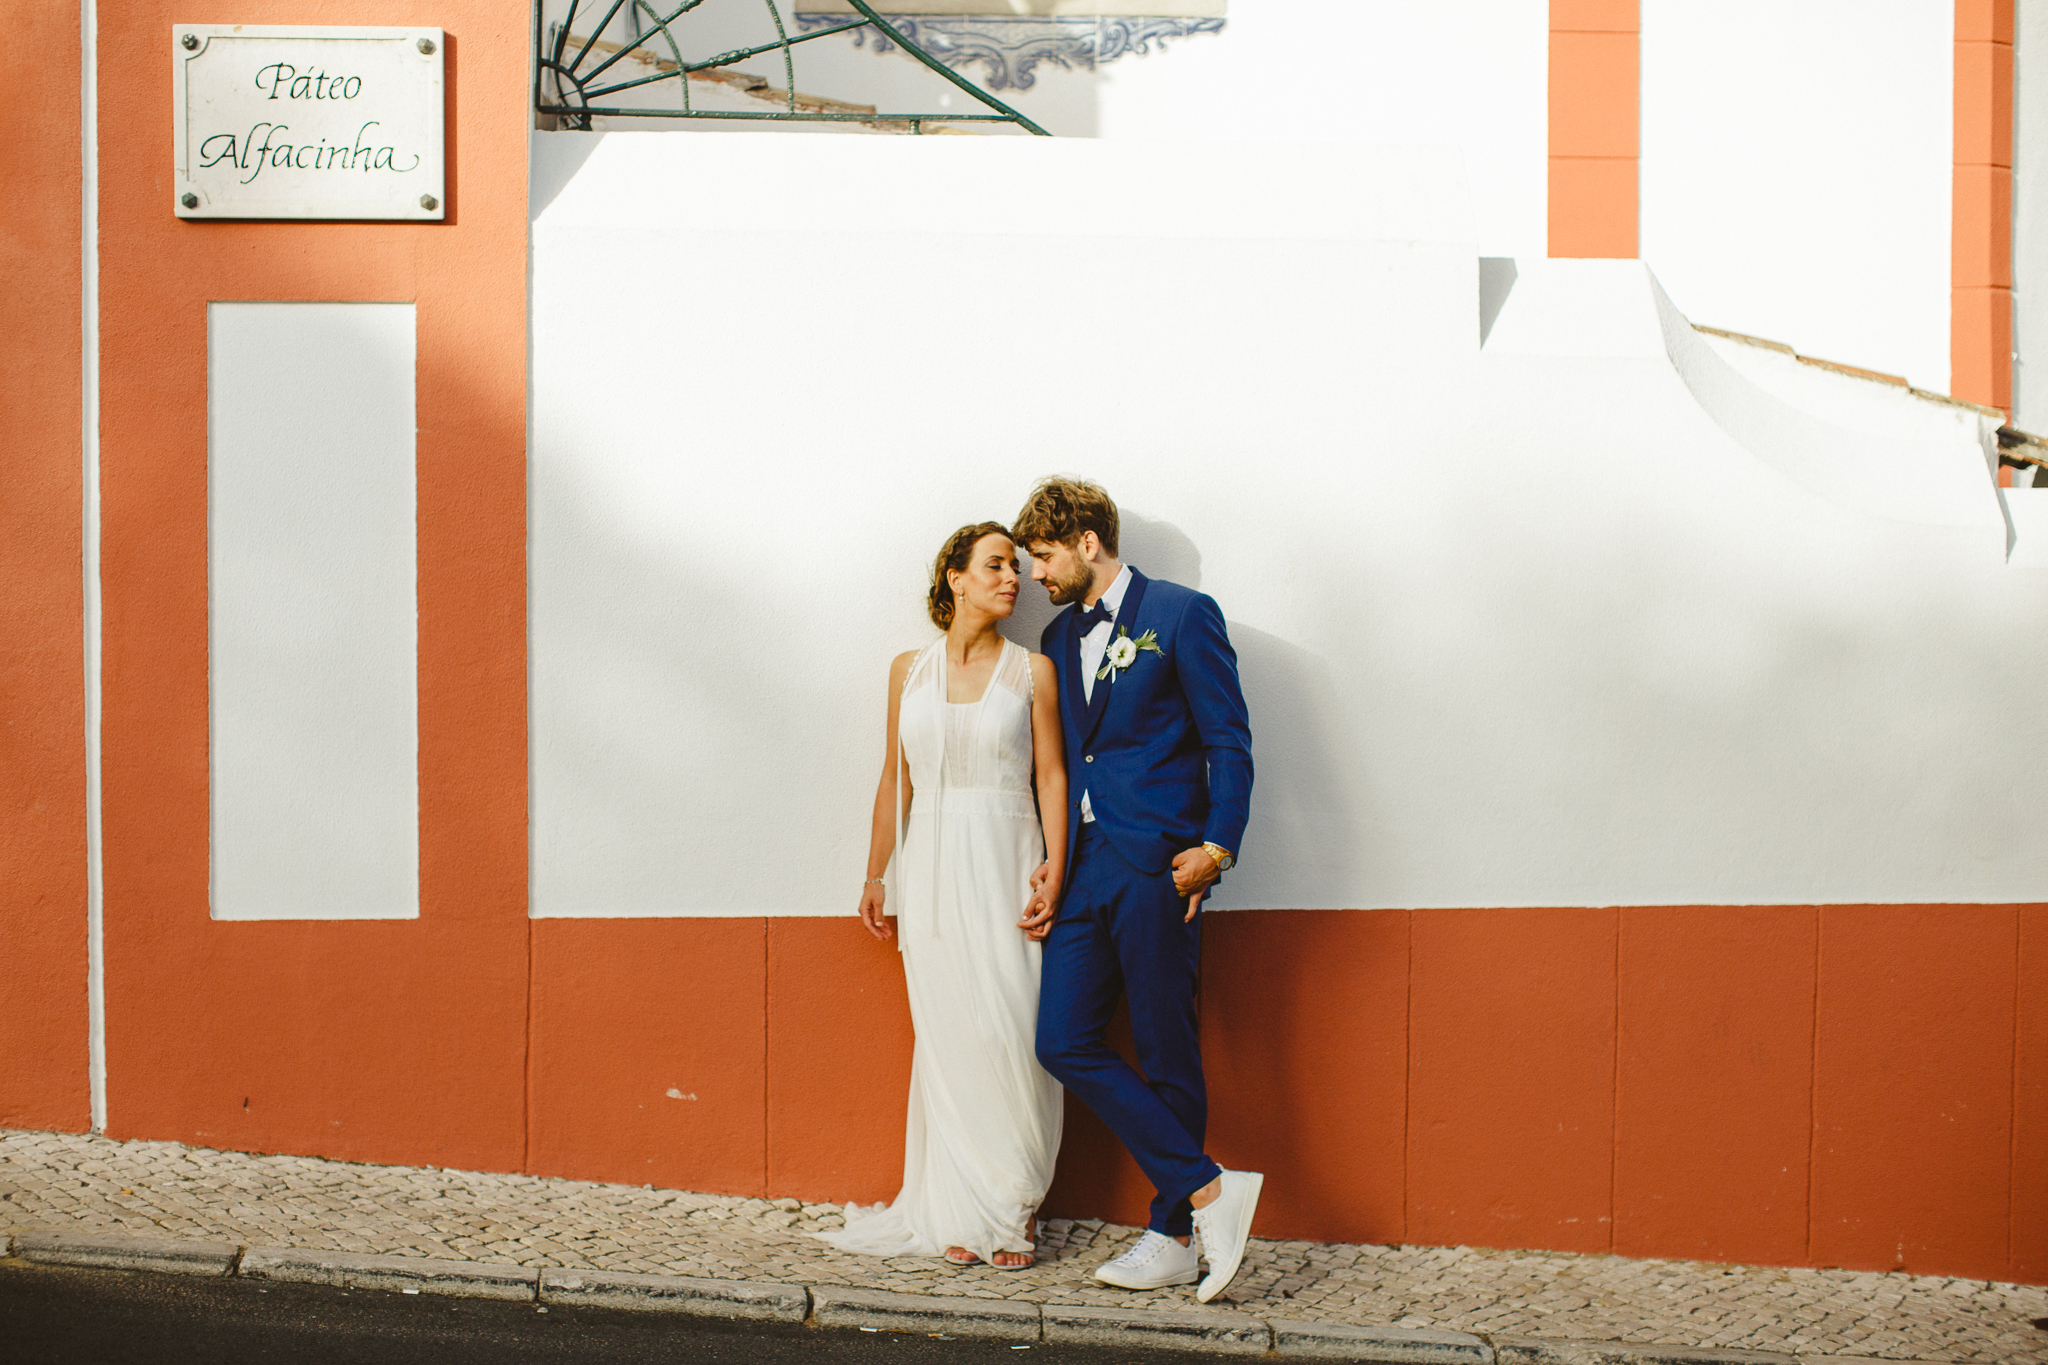 Destination Wedding Photographer Portugal, Destination Wedding in Lisbon, Wedding Photographer in Lisbon, Fotografia de Casamento Páteo Alfacinha, Fotógrafo de Casamento Lisboa